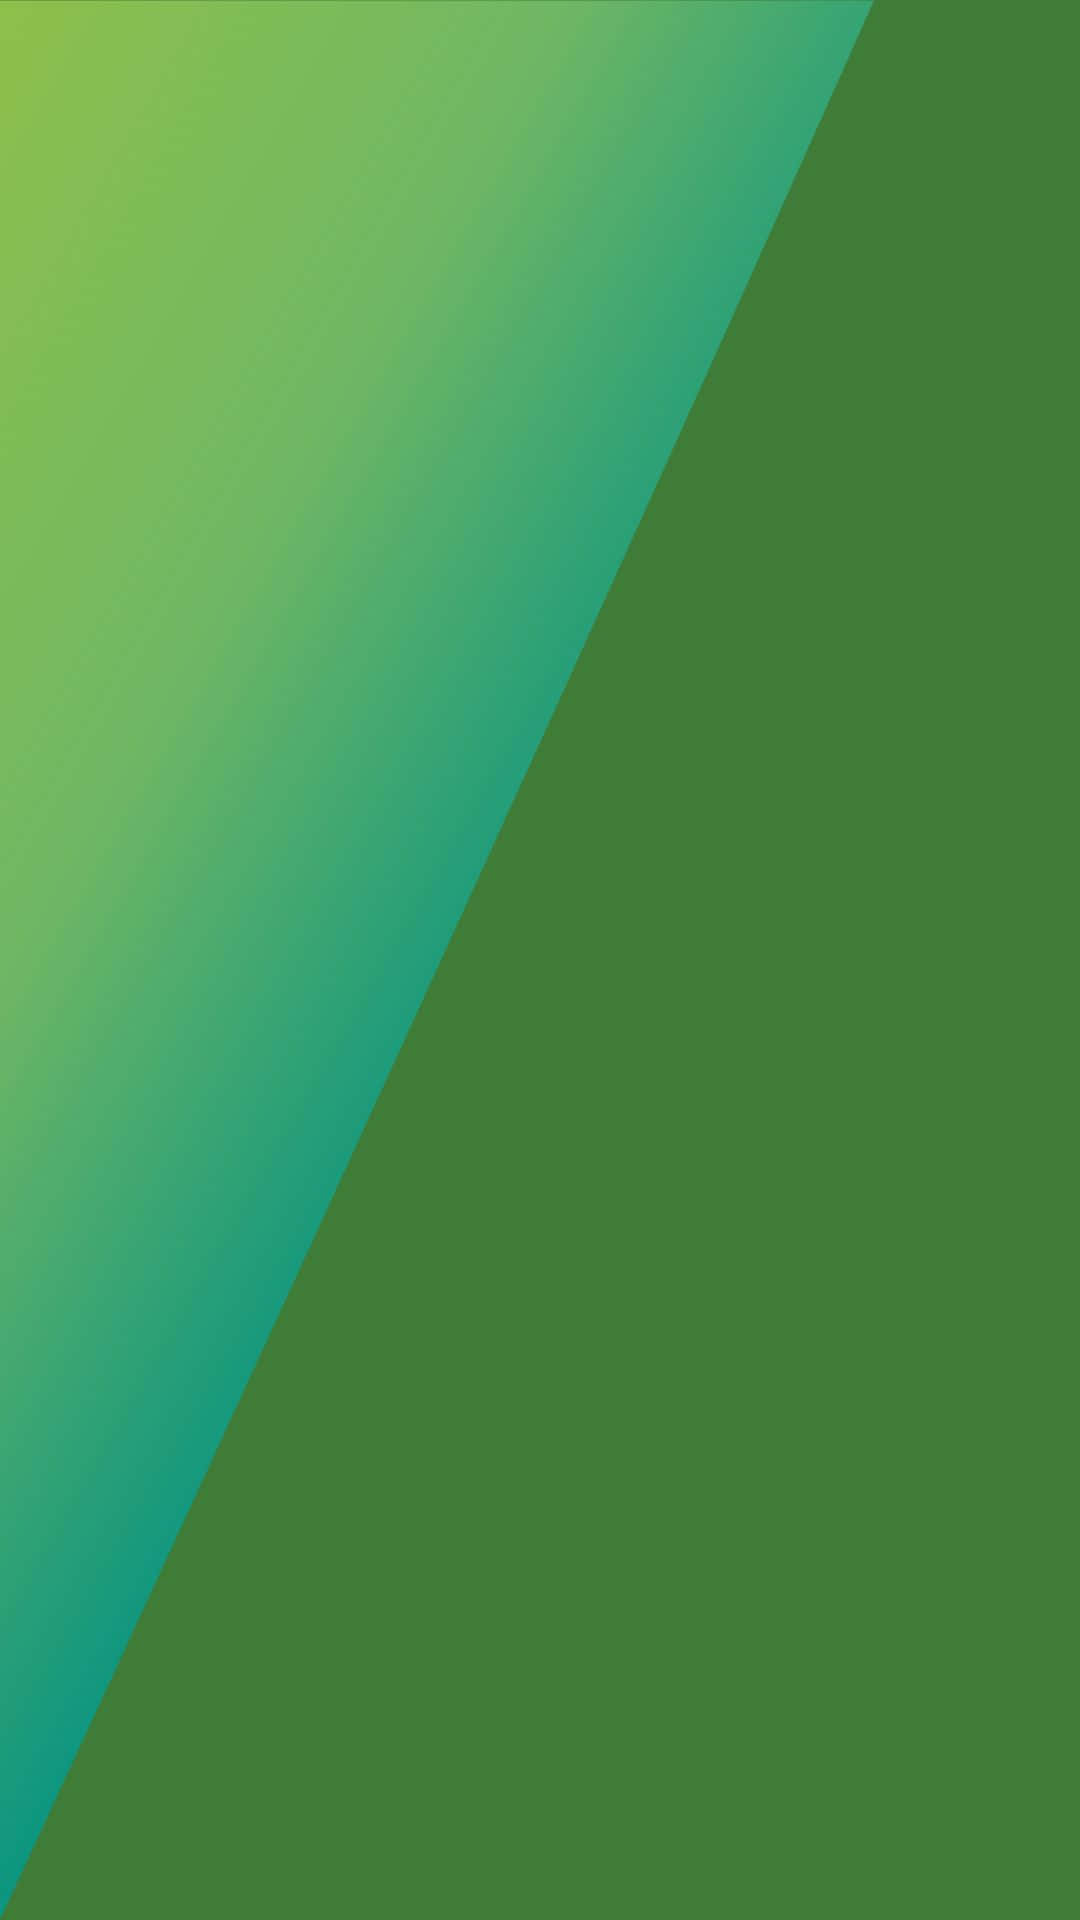 Unosfondo Verde E Blu Con Un Triangolo